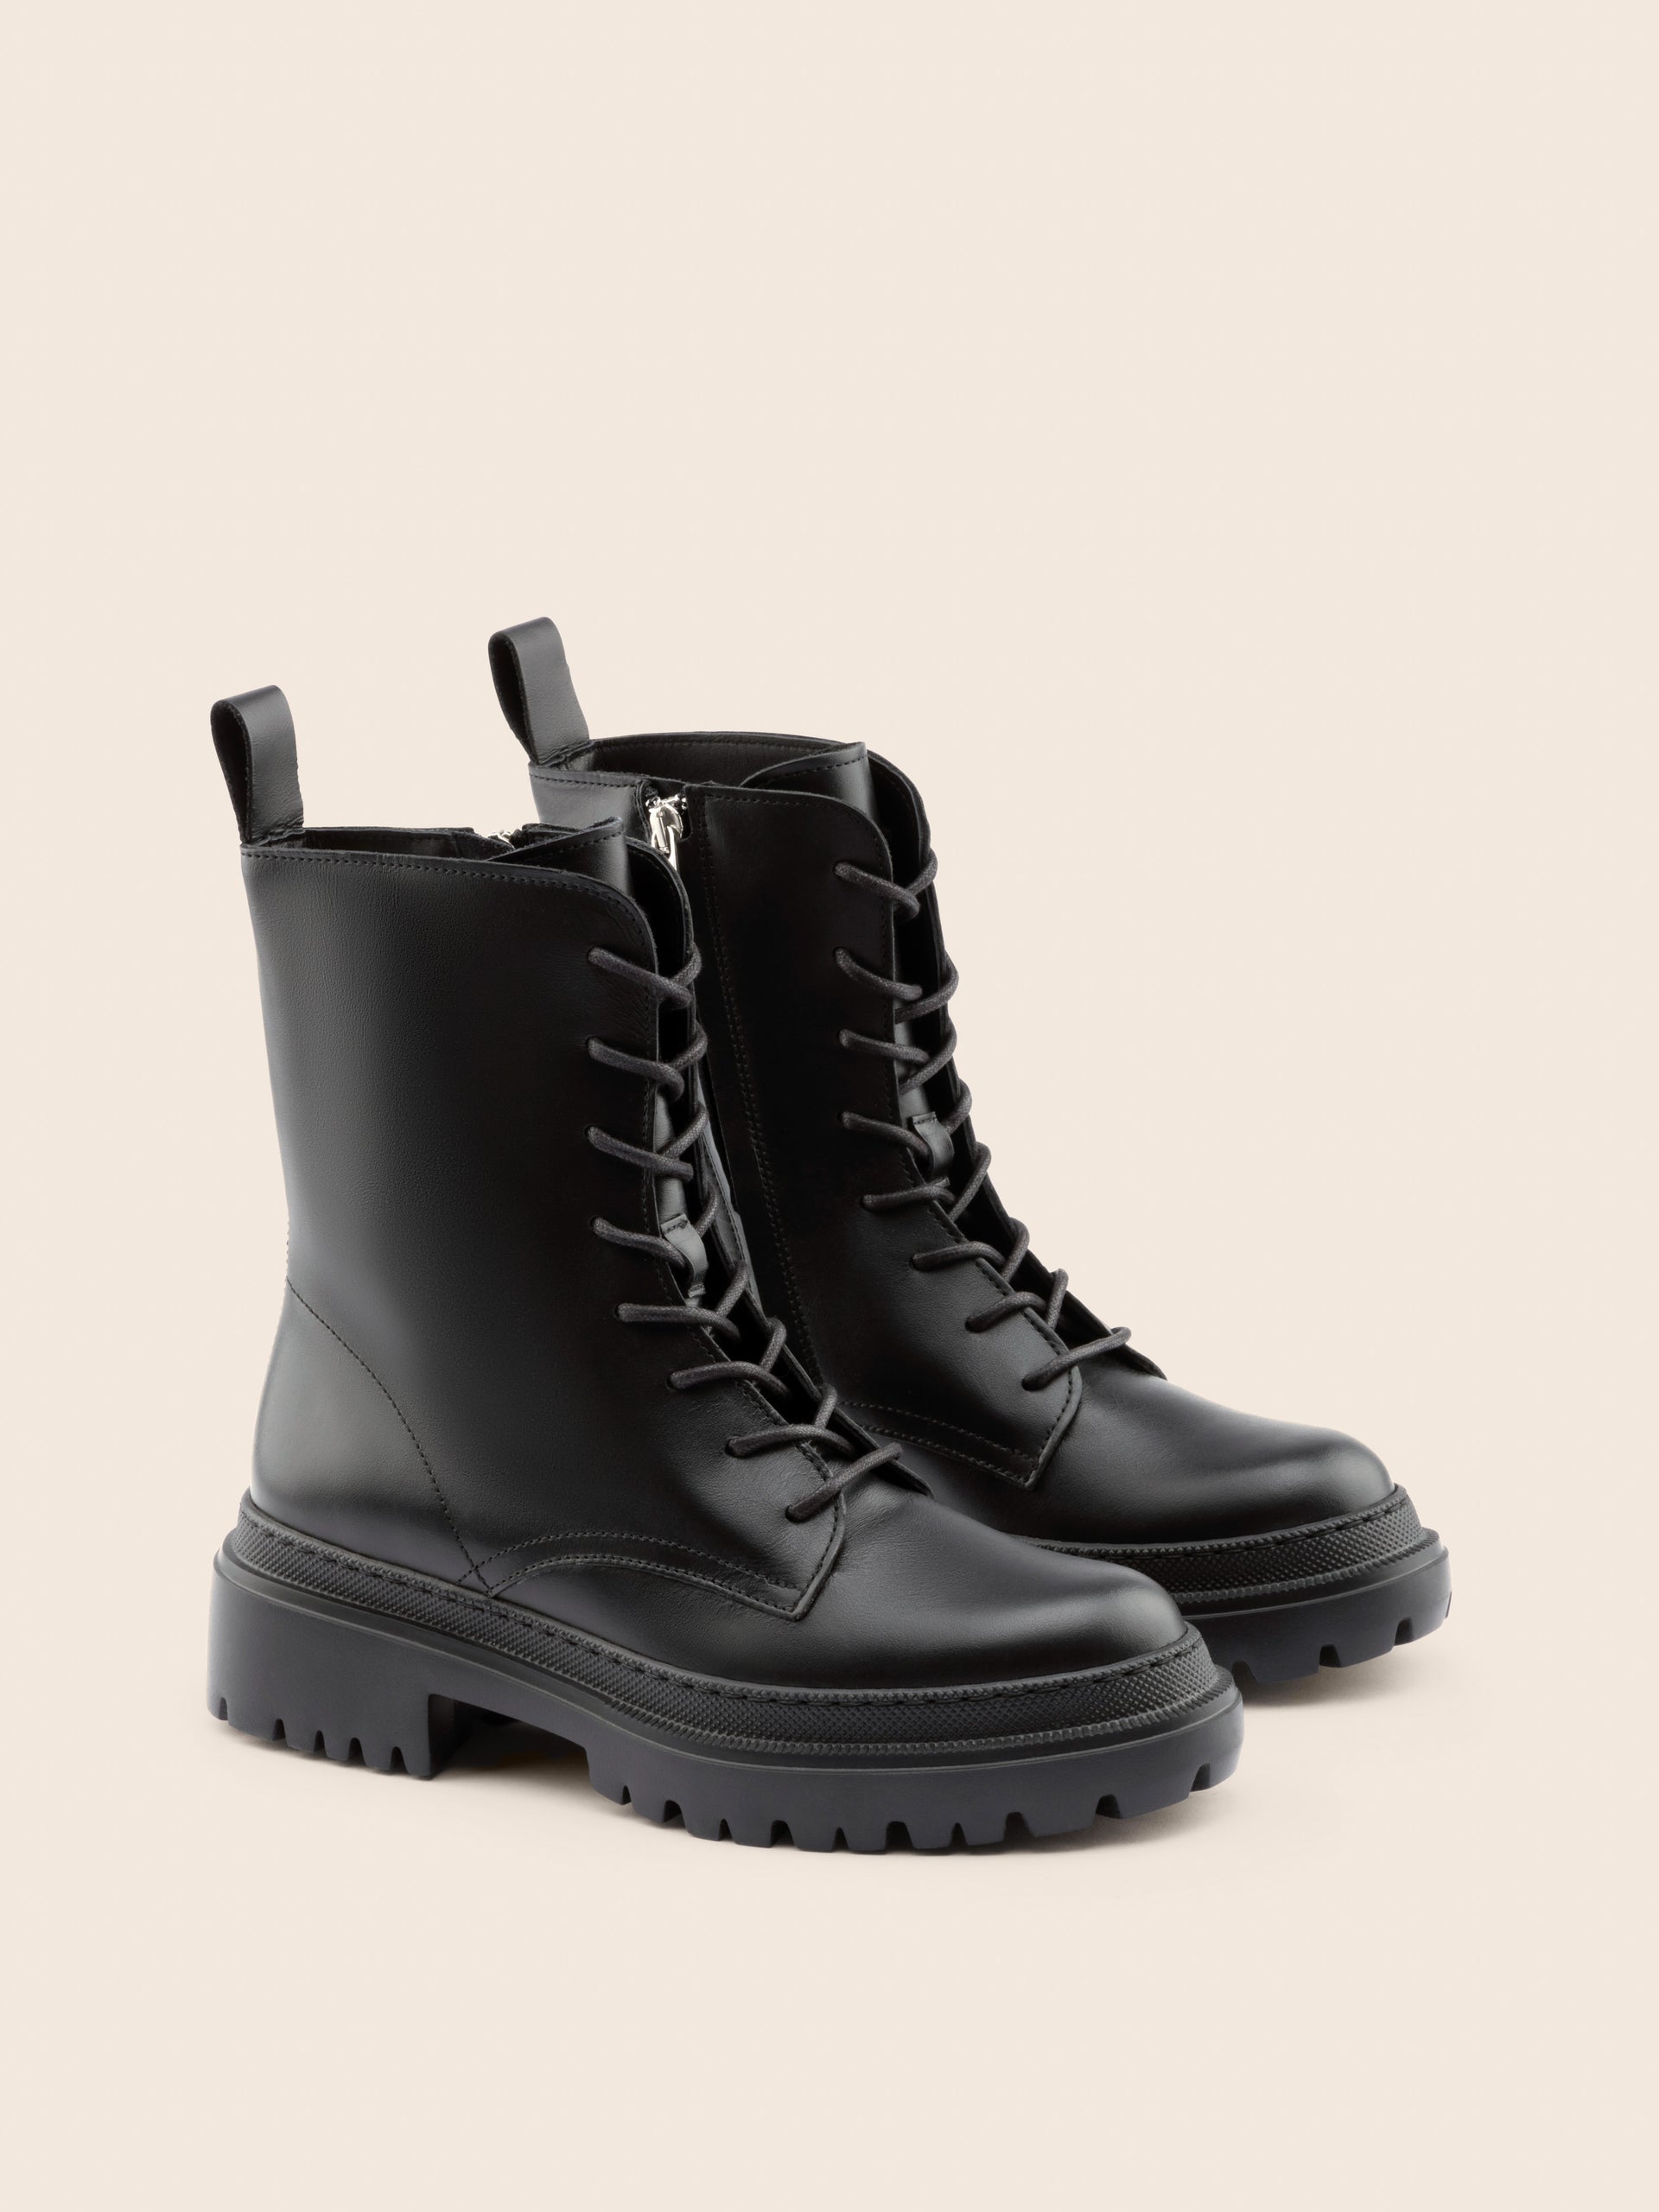 Belluno Black Leather Boot